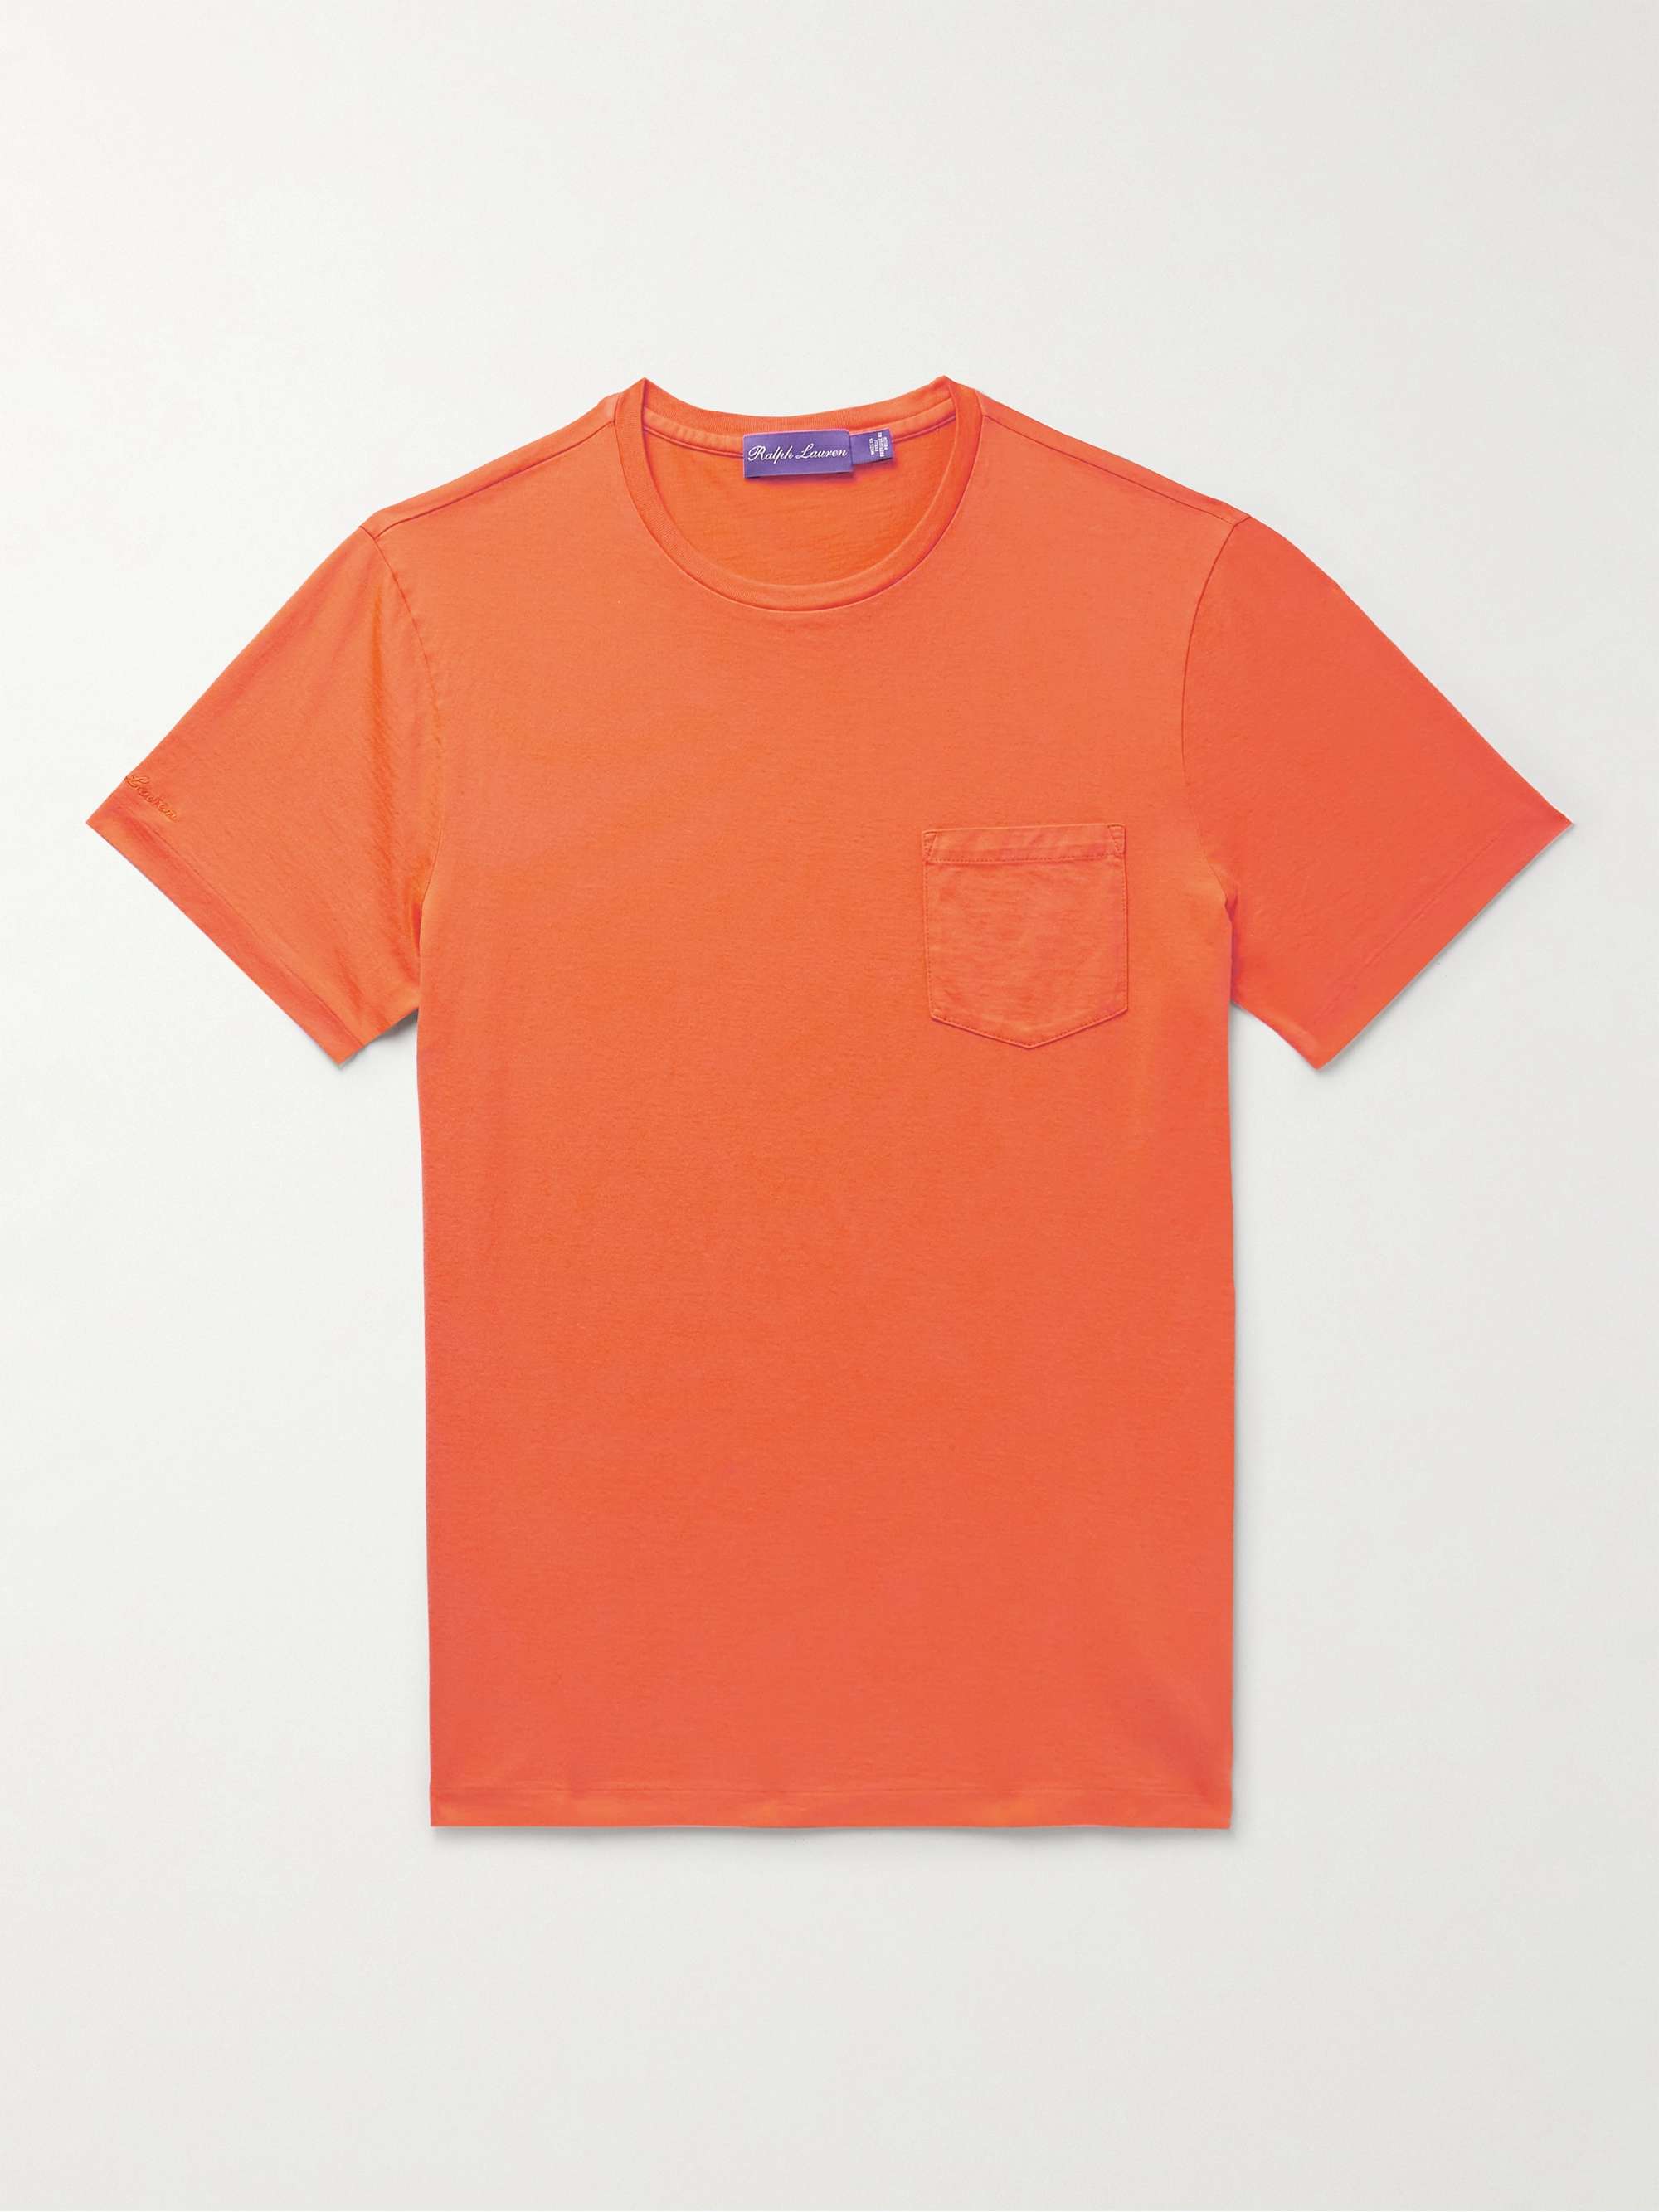 RALPH LAUREN PURPLE LABEL Cotton-Jersey T-Shirt for Men | MR PORTER